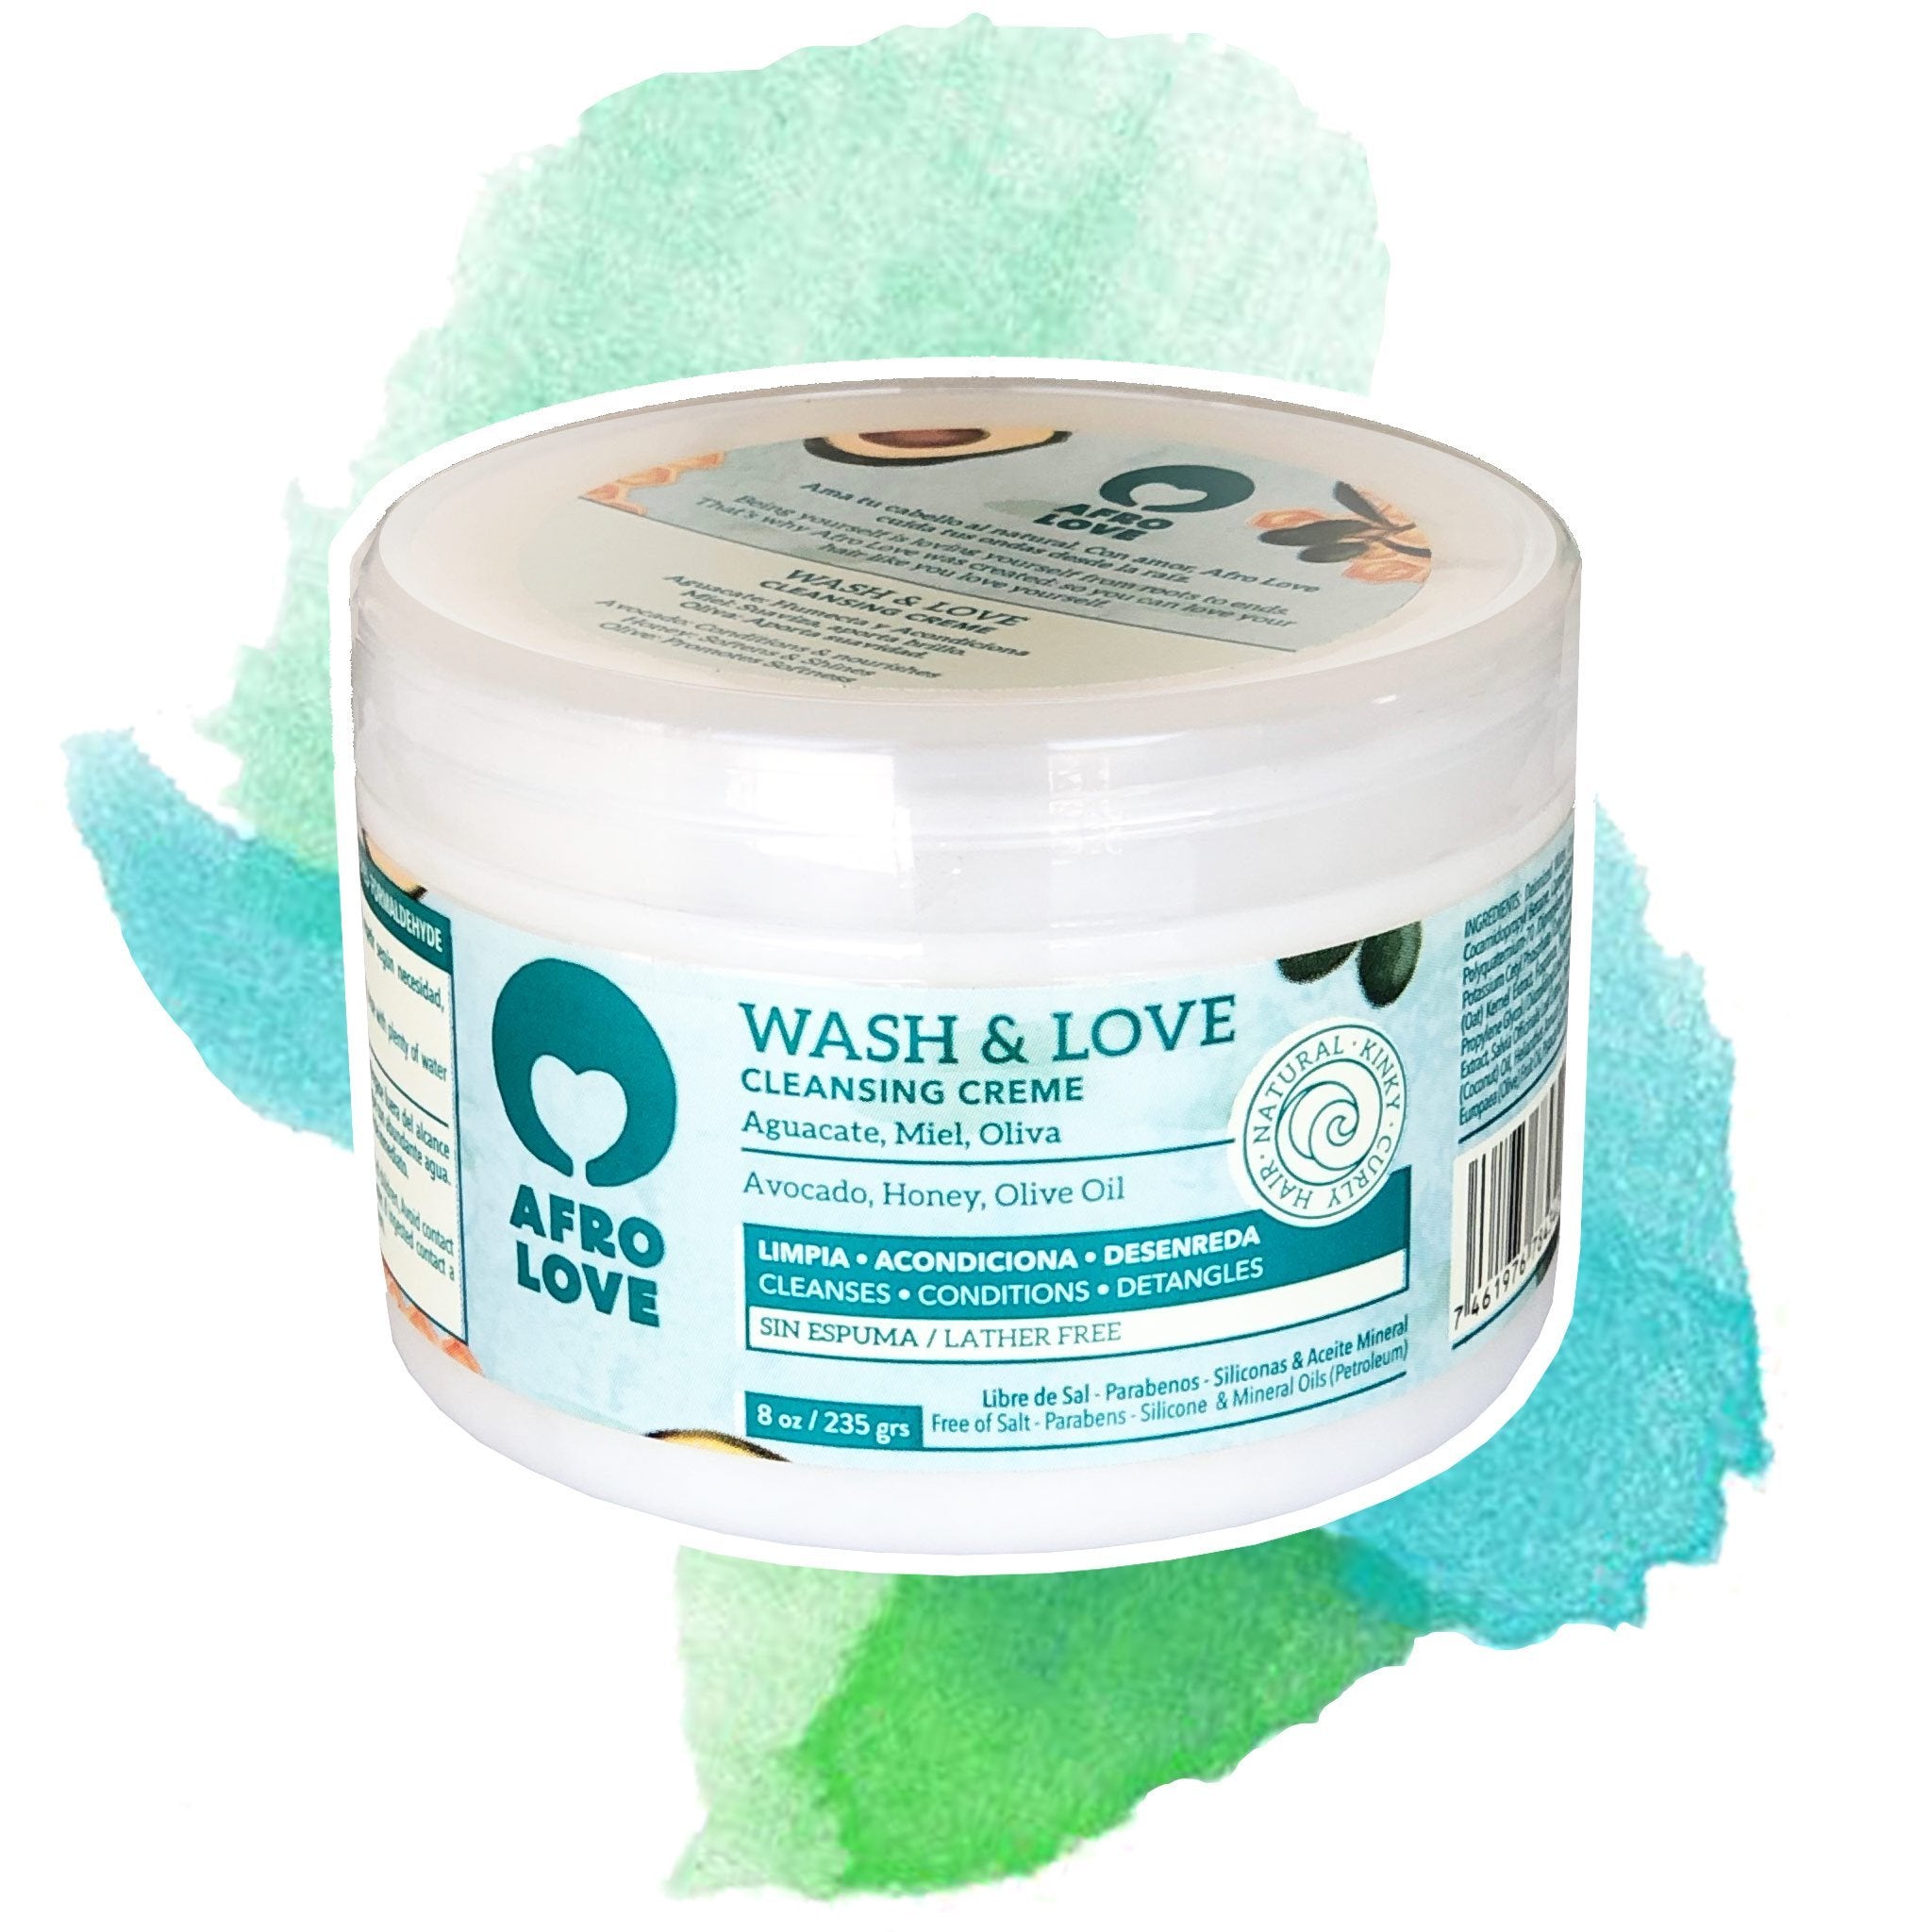 AFRO LOVE |  Wash & Love Cleansing Creme - lockenkopf 